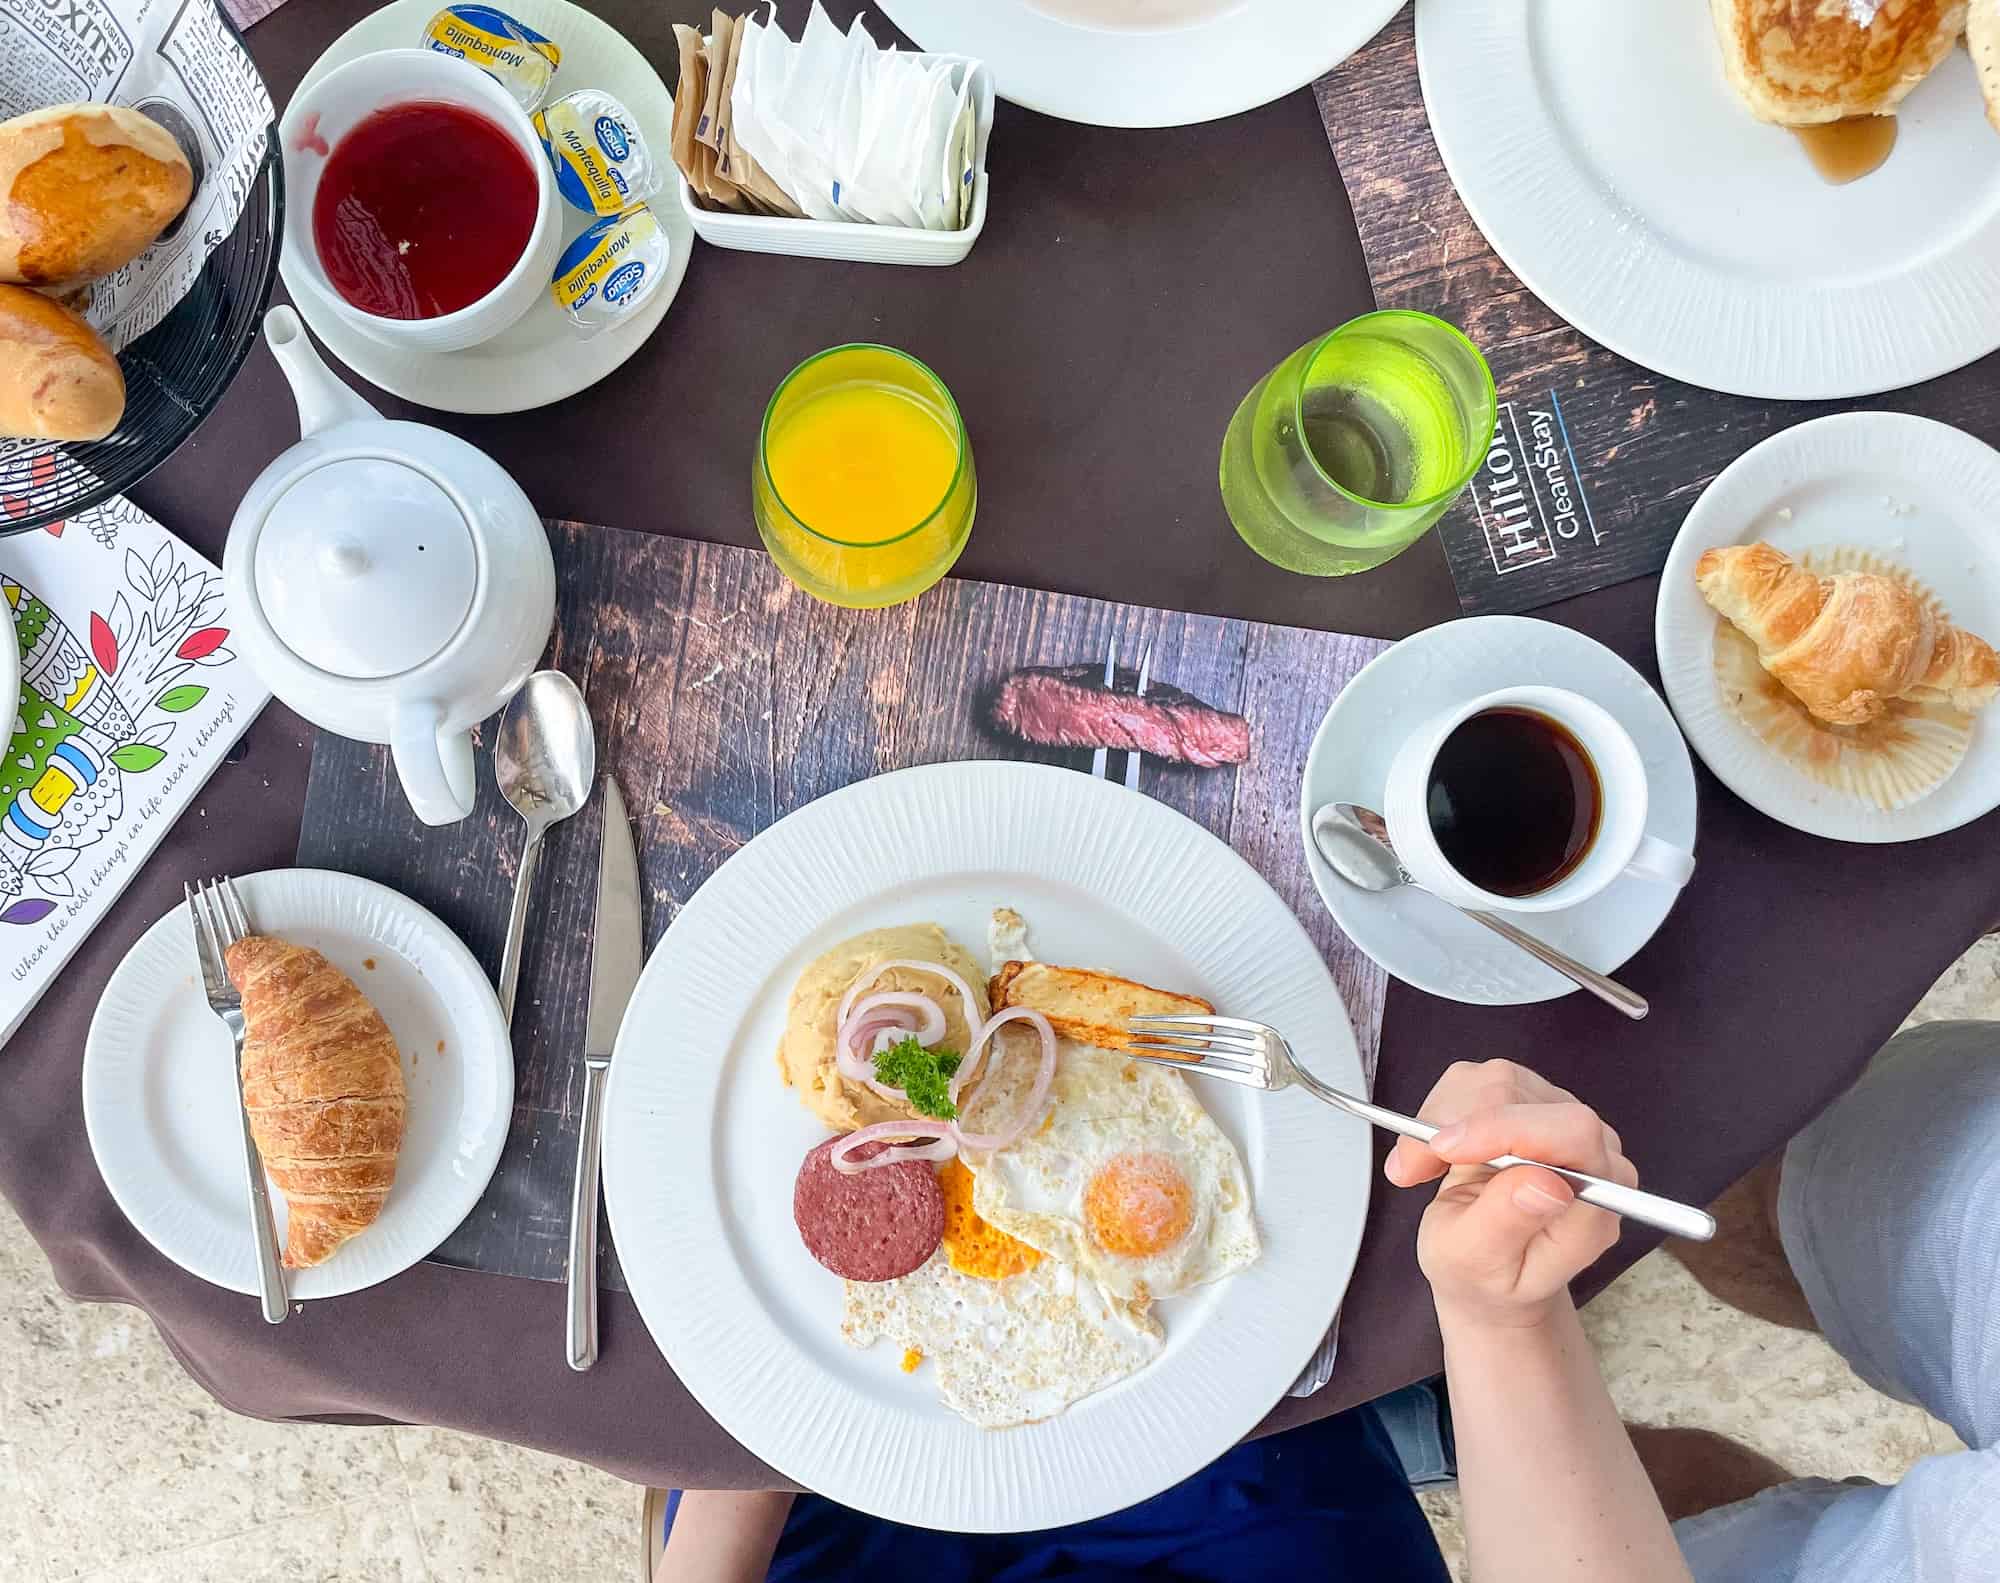 Dominican Republic - Breakfast spread at Hilton La Romana